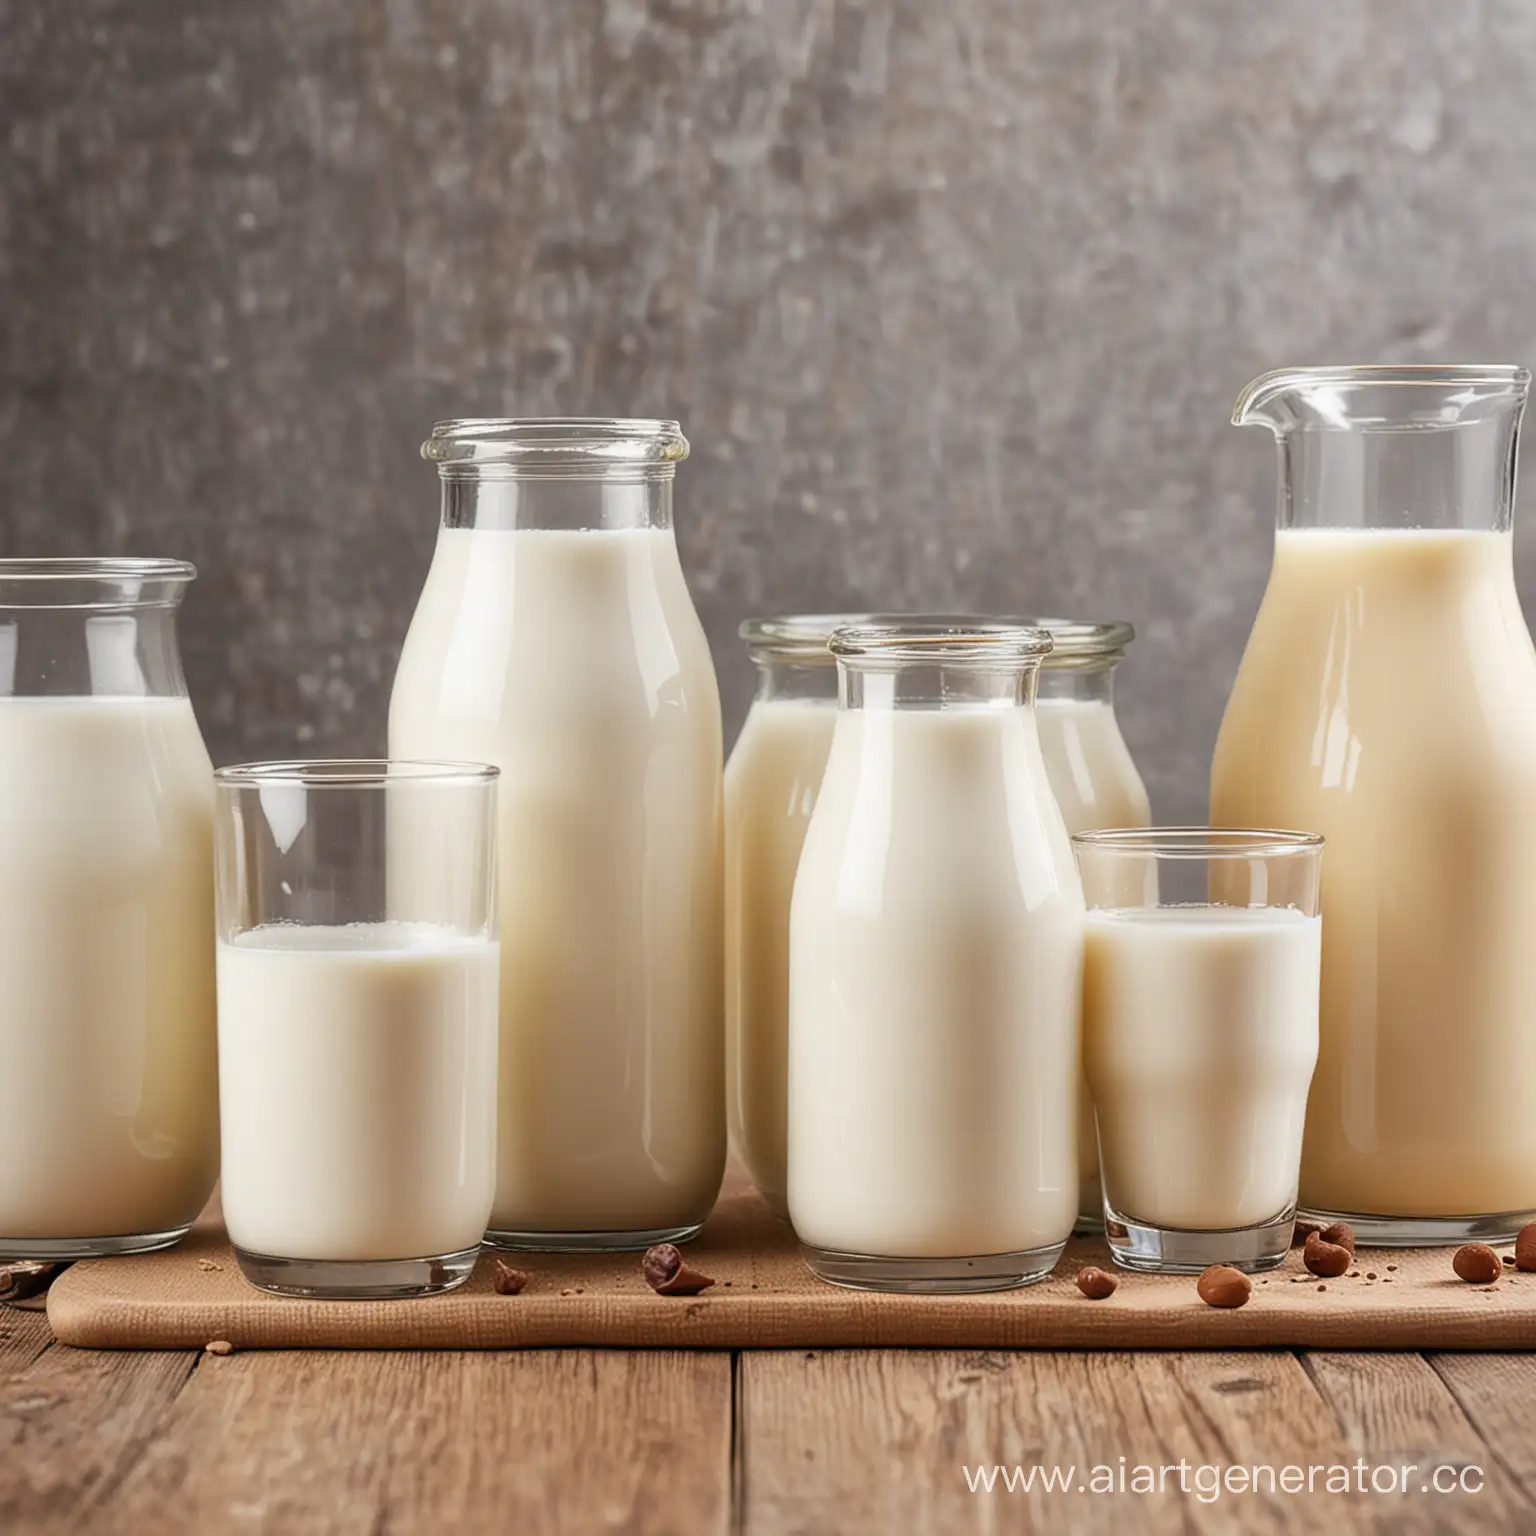 Сравнительная оценка качества молока от разных производителей, что нибудь оригинальное 